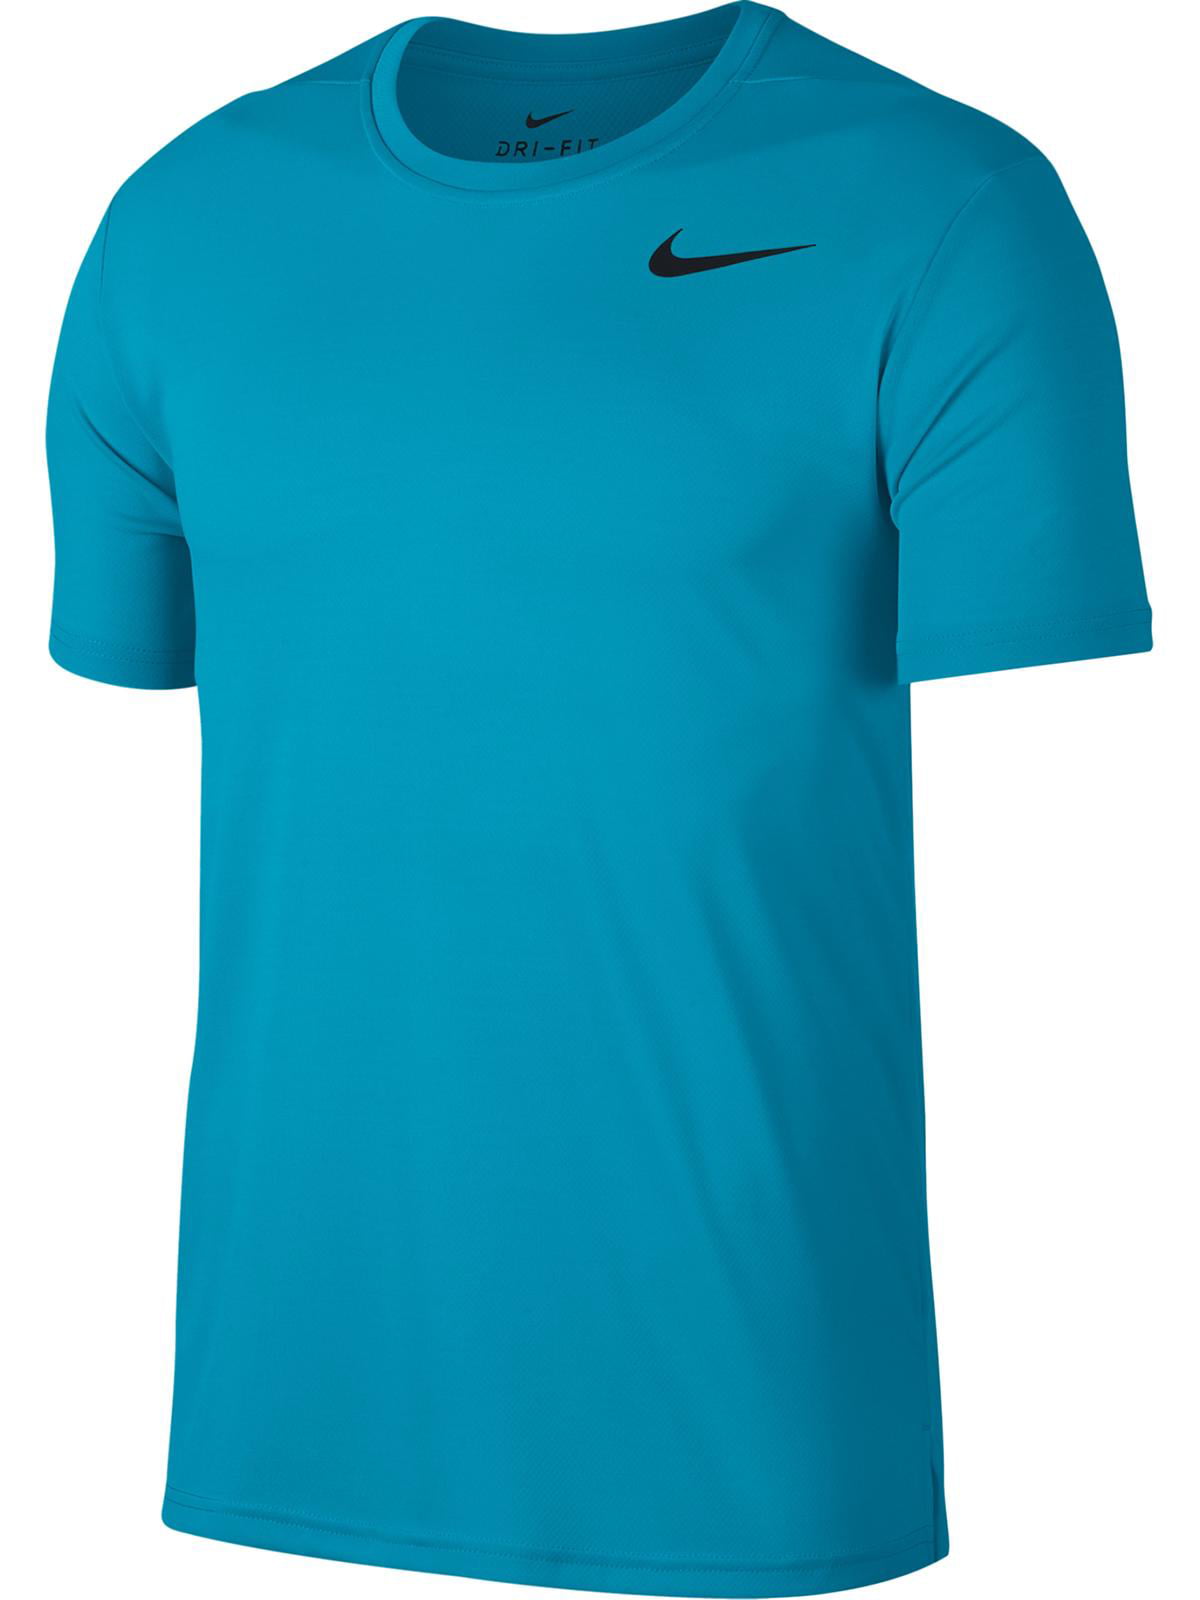 Nike - Nike Mens Training Short Sleeve T-Shirt - Walmart.com - Walmart.com